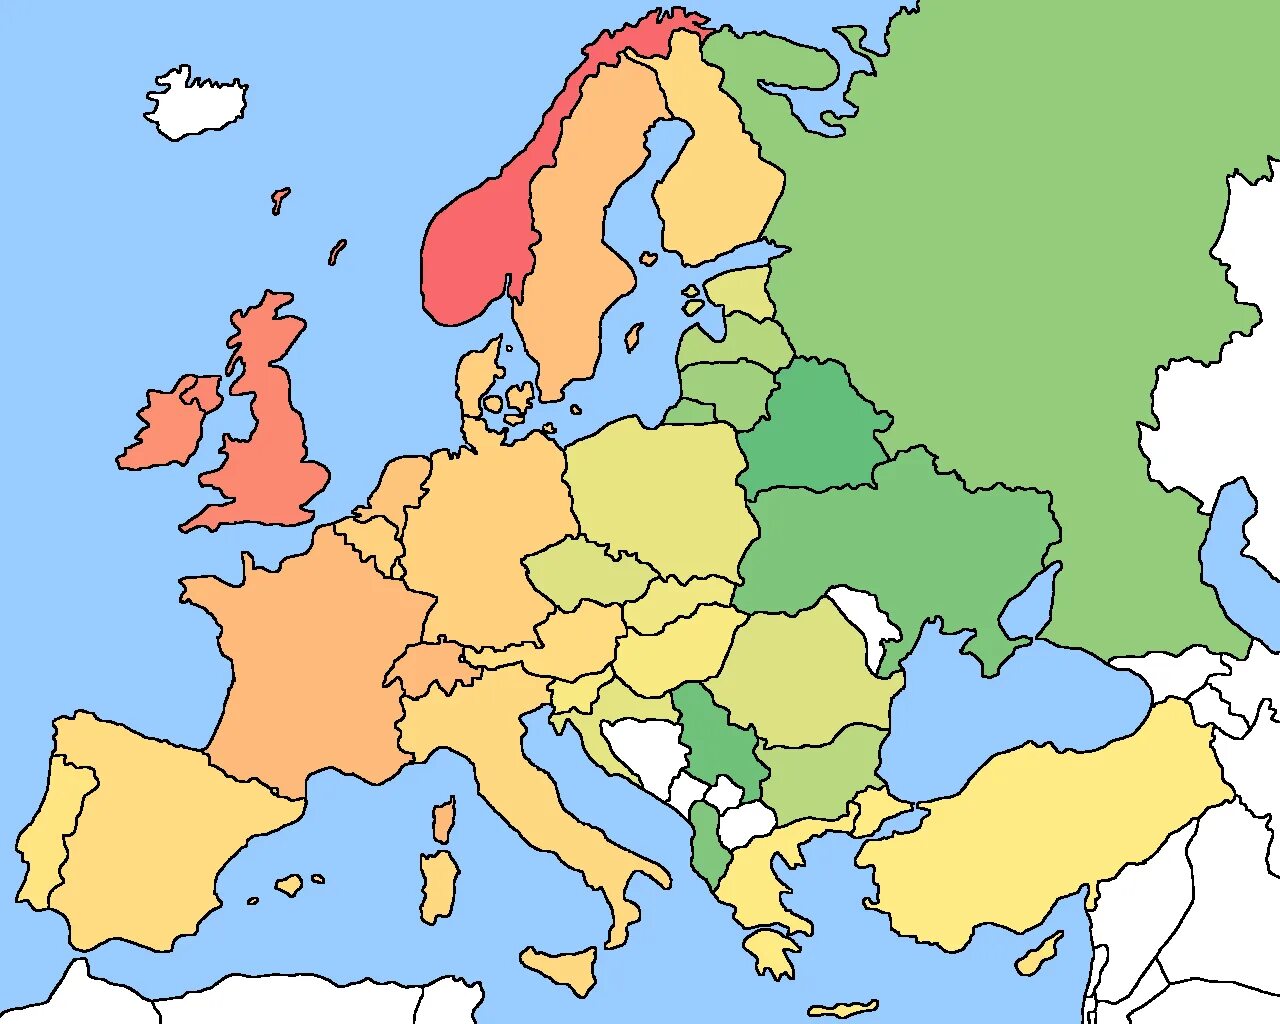 Великобритания восточная европа. Карта Европы без названий стран. Прлитическая карат Европы без названий. Политическая карта Европы без стран. Карта Европы со странами без названий стран.